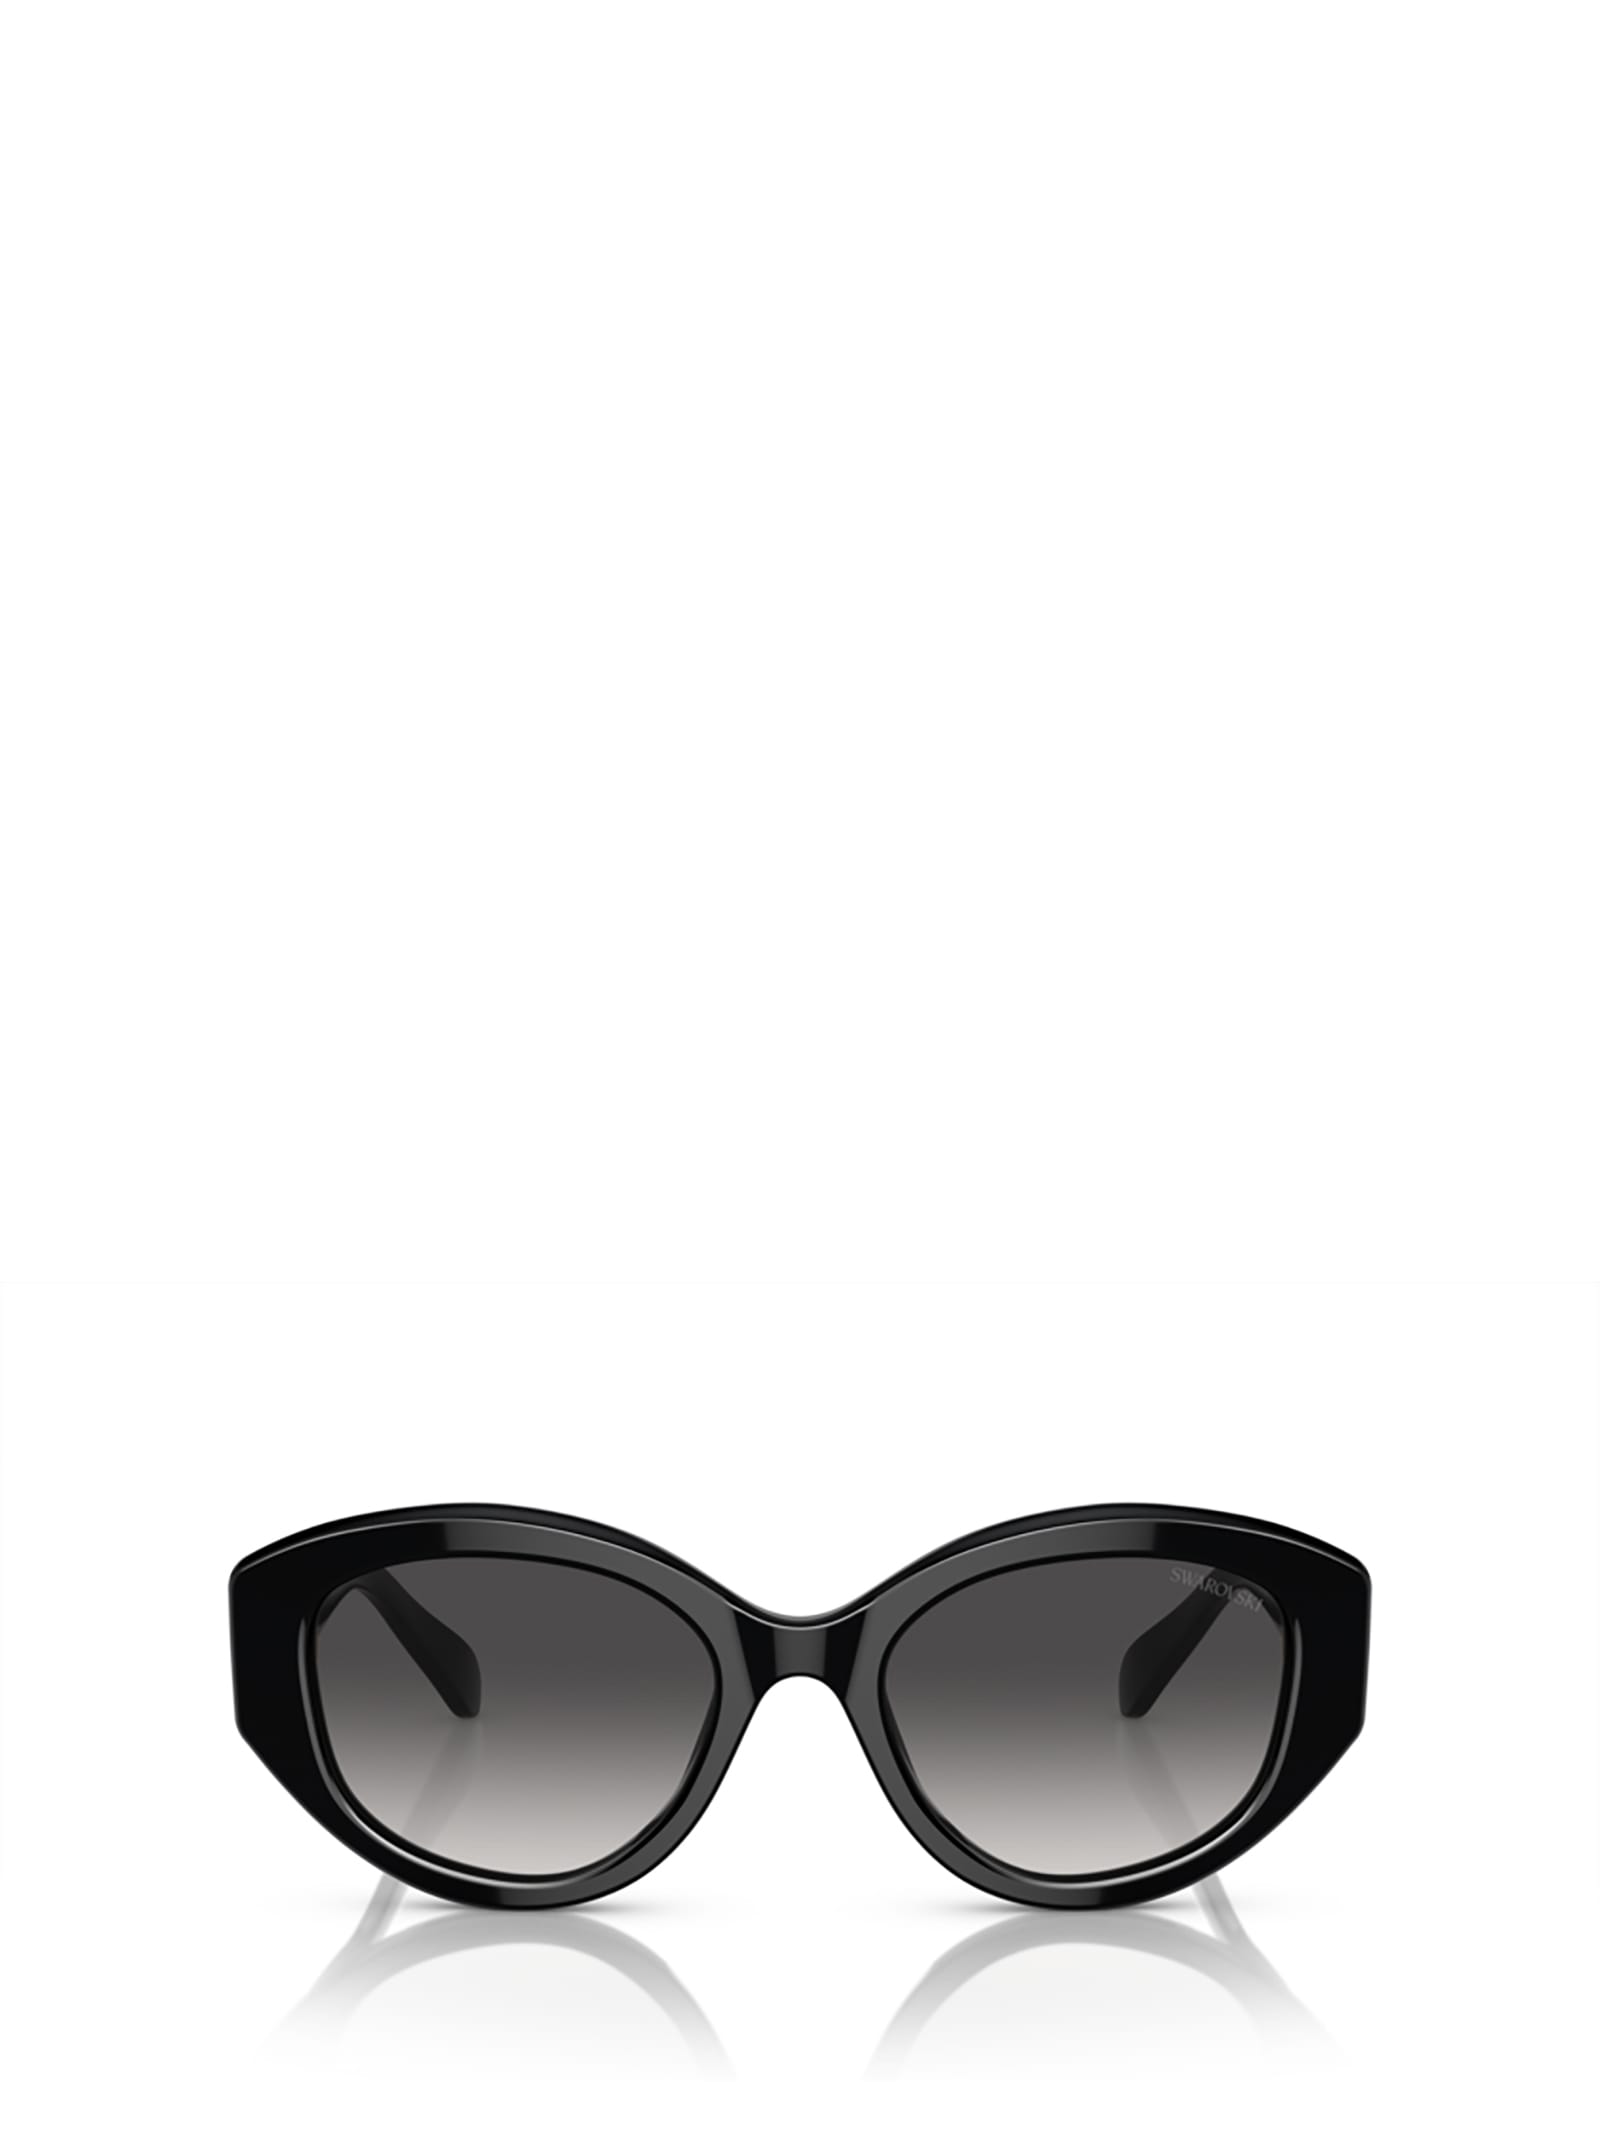 Swarovski Sk6005 Black Sunglasses